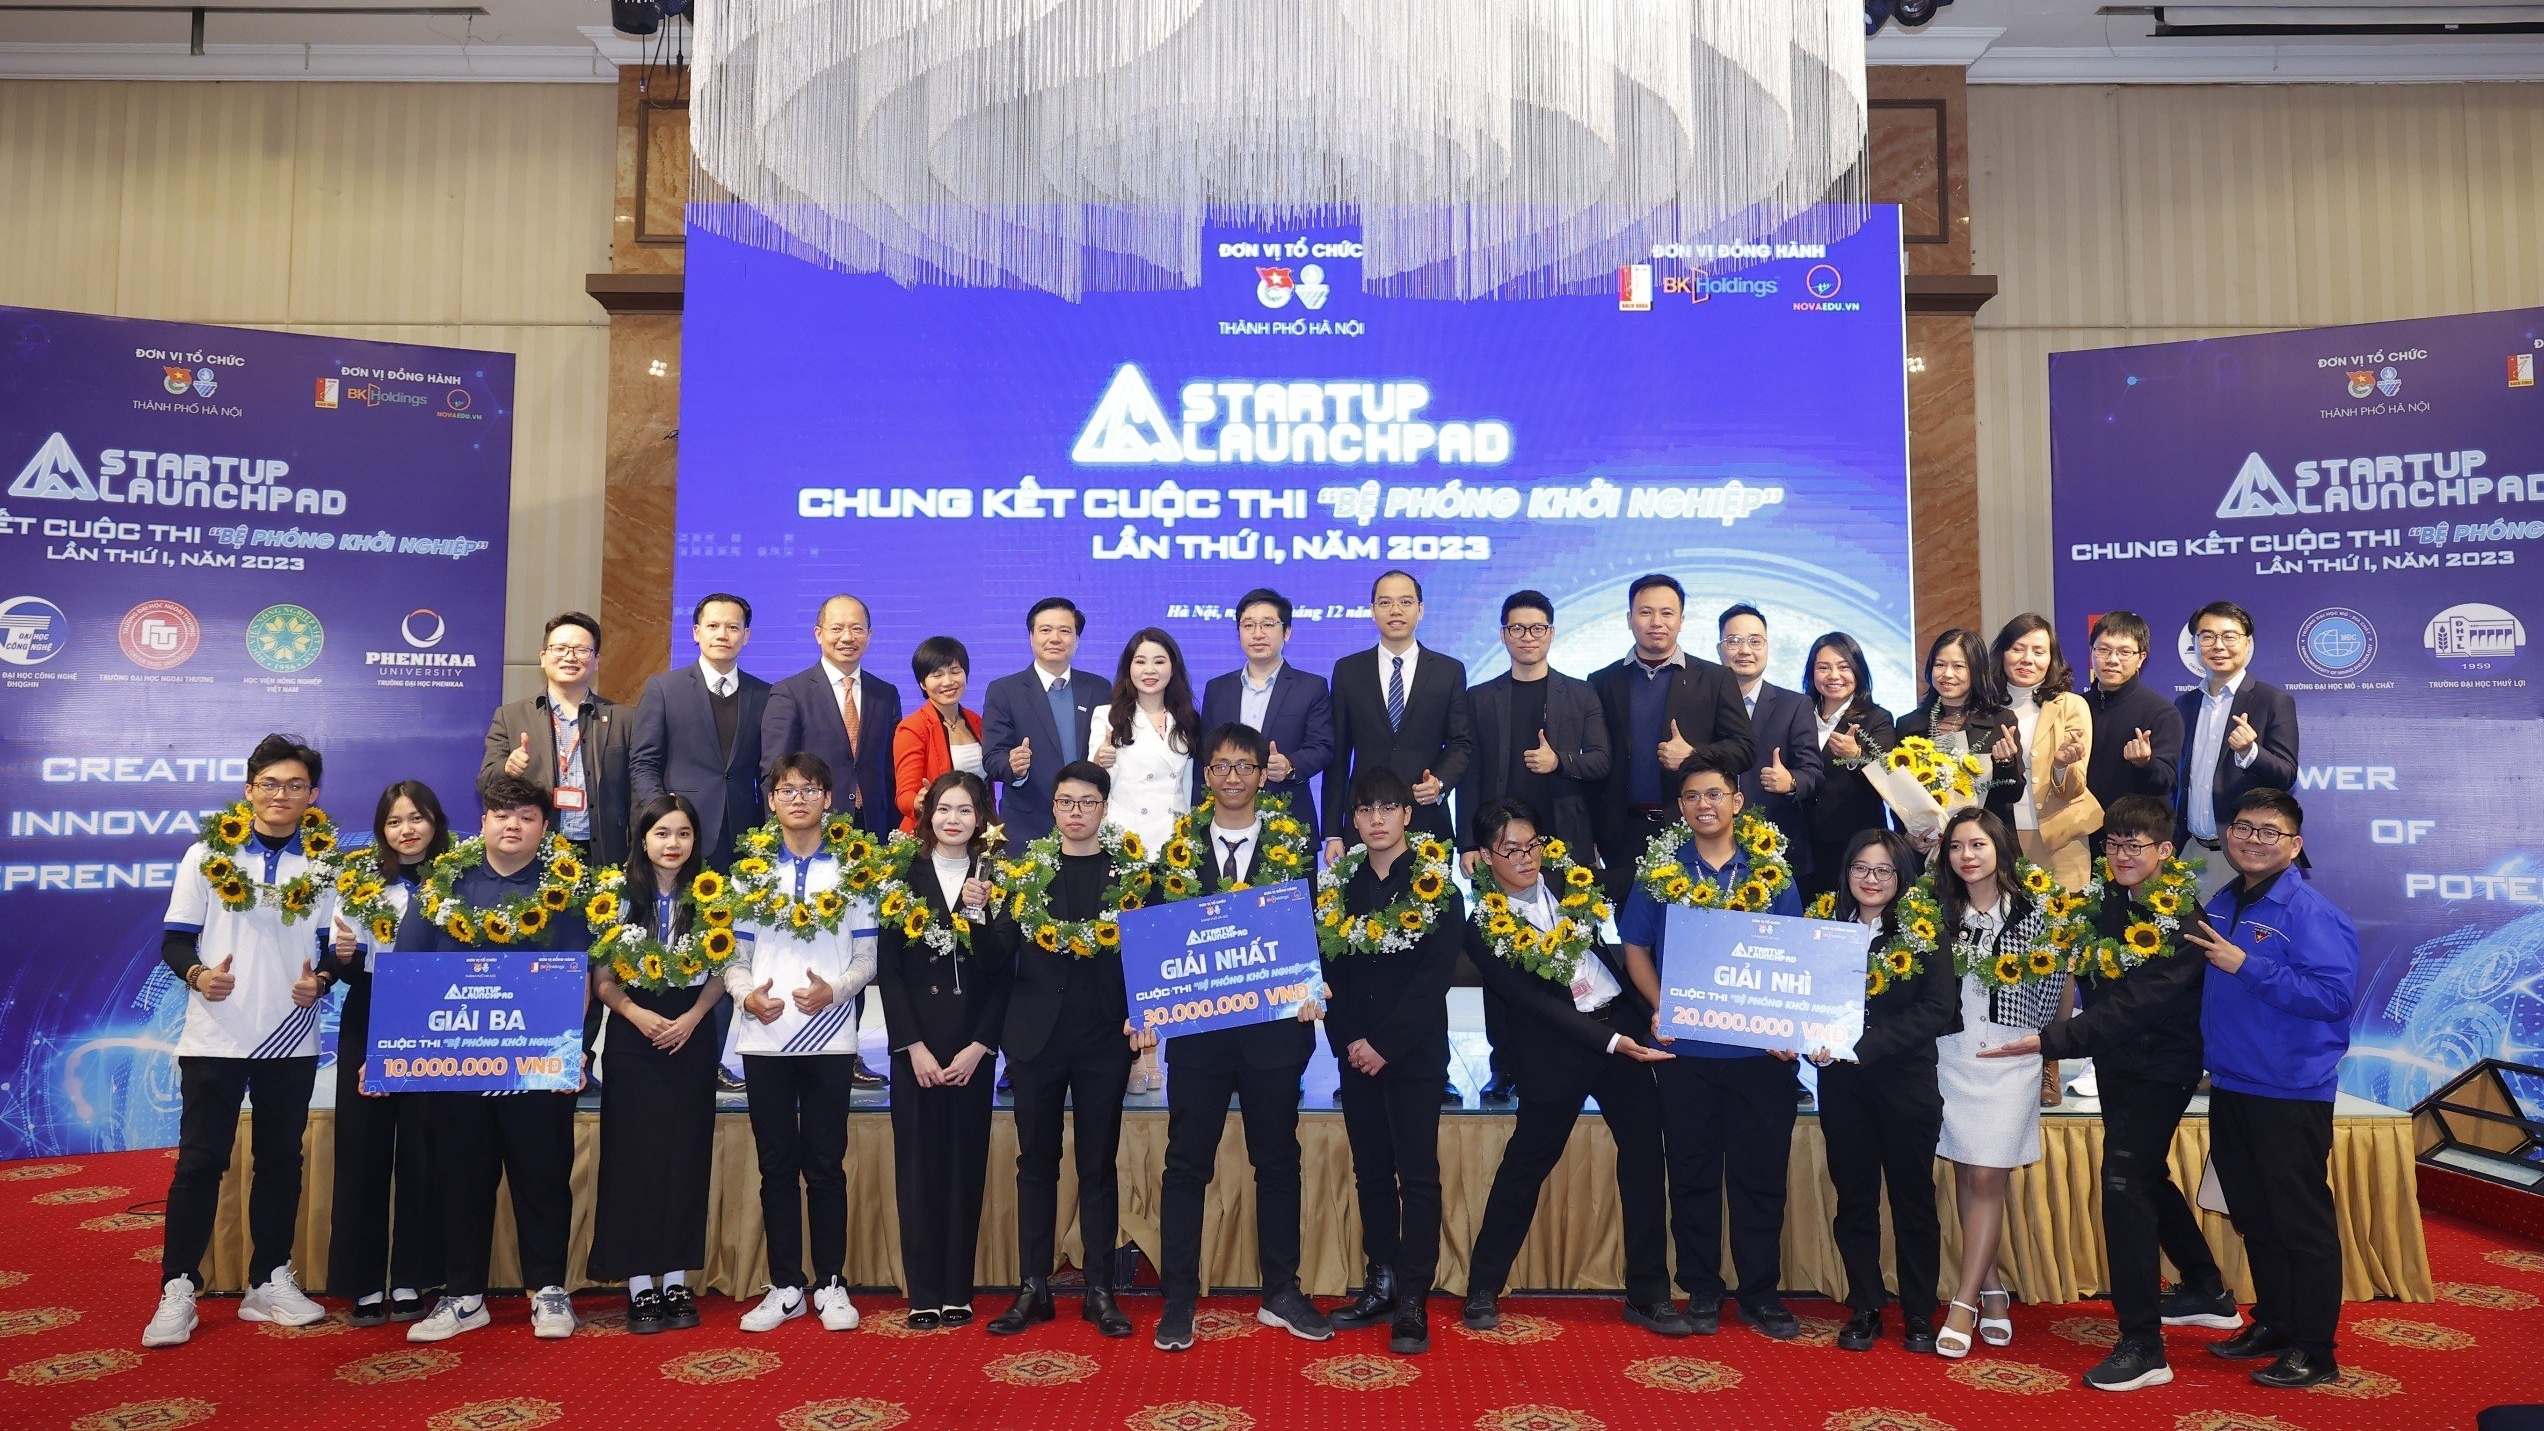 Bệ phóng khởi nghiệp: Giới trẻ chung tay vì mục tiêu NET ZERO của Việt Nam